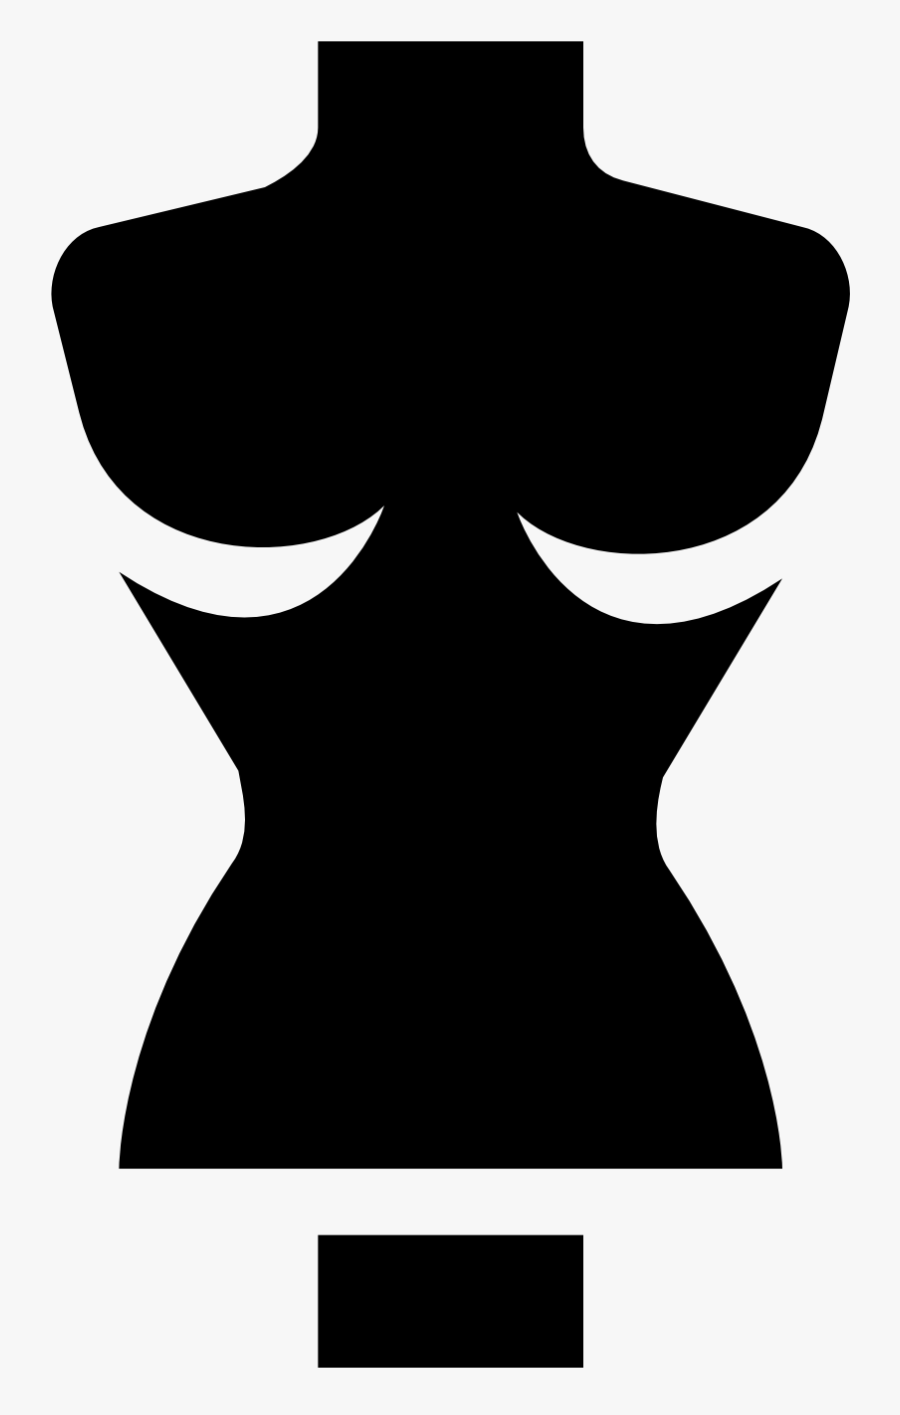 Transparent Black Woman Silhouette Png, Transparent Clipart